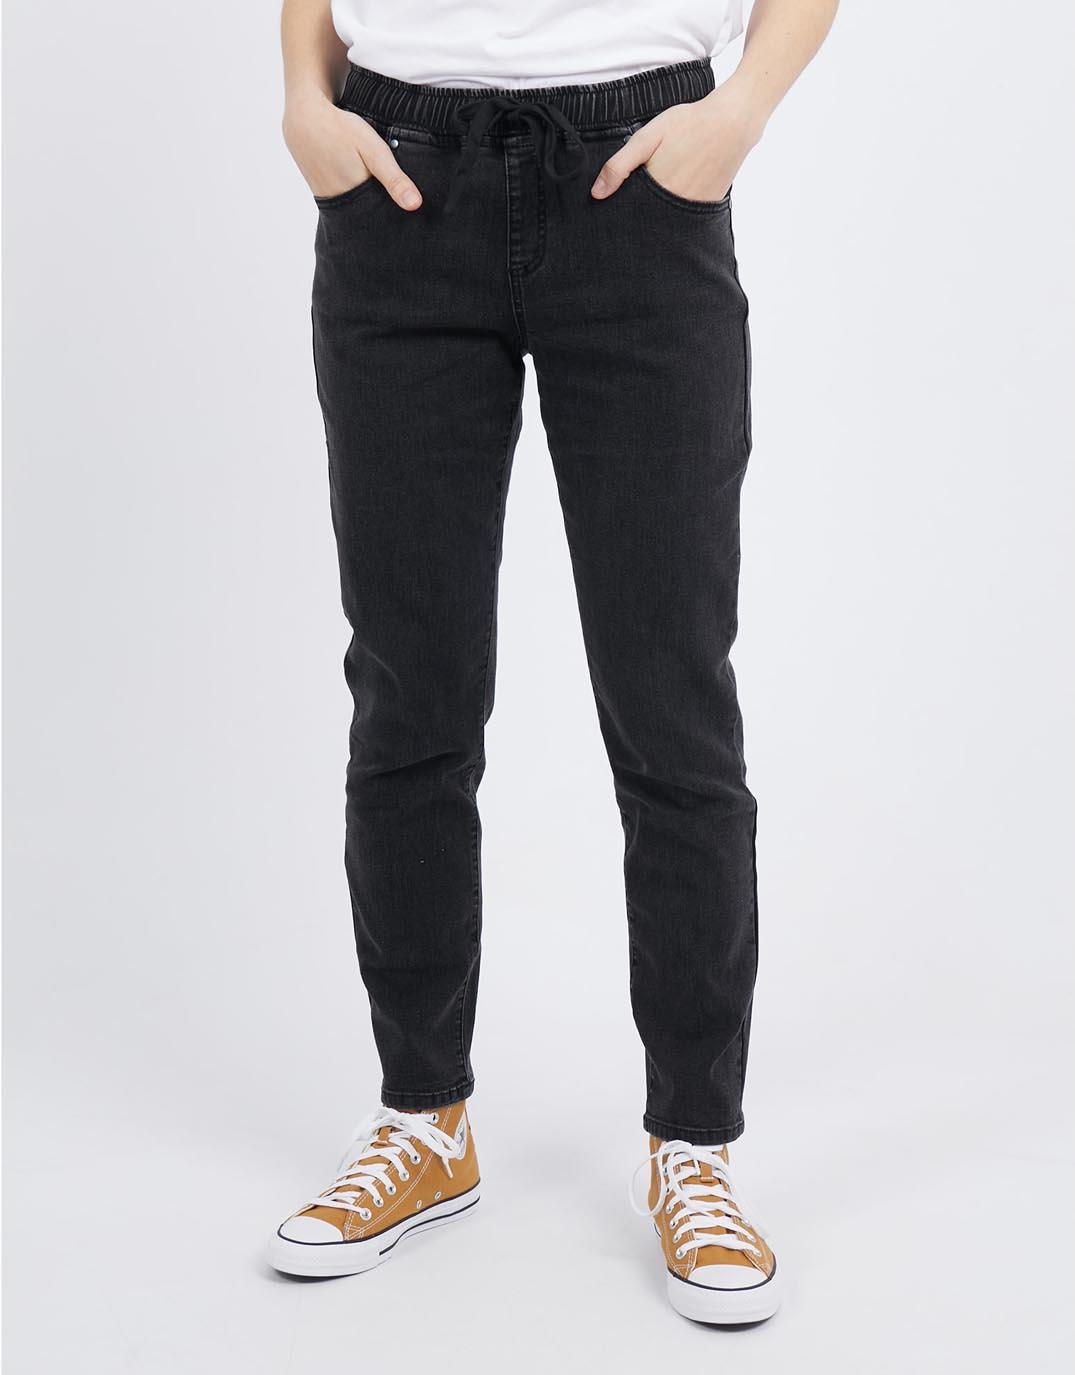 Elm Lifestyle Denim Jeans for Sale, Shop Online, Australia